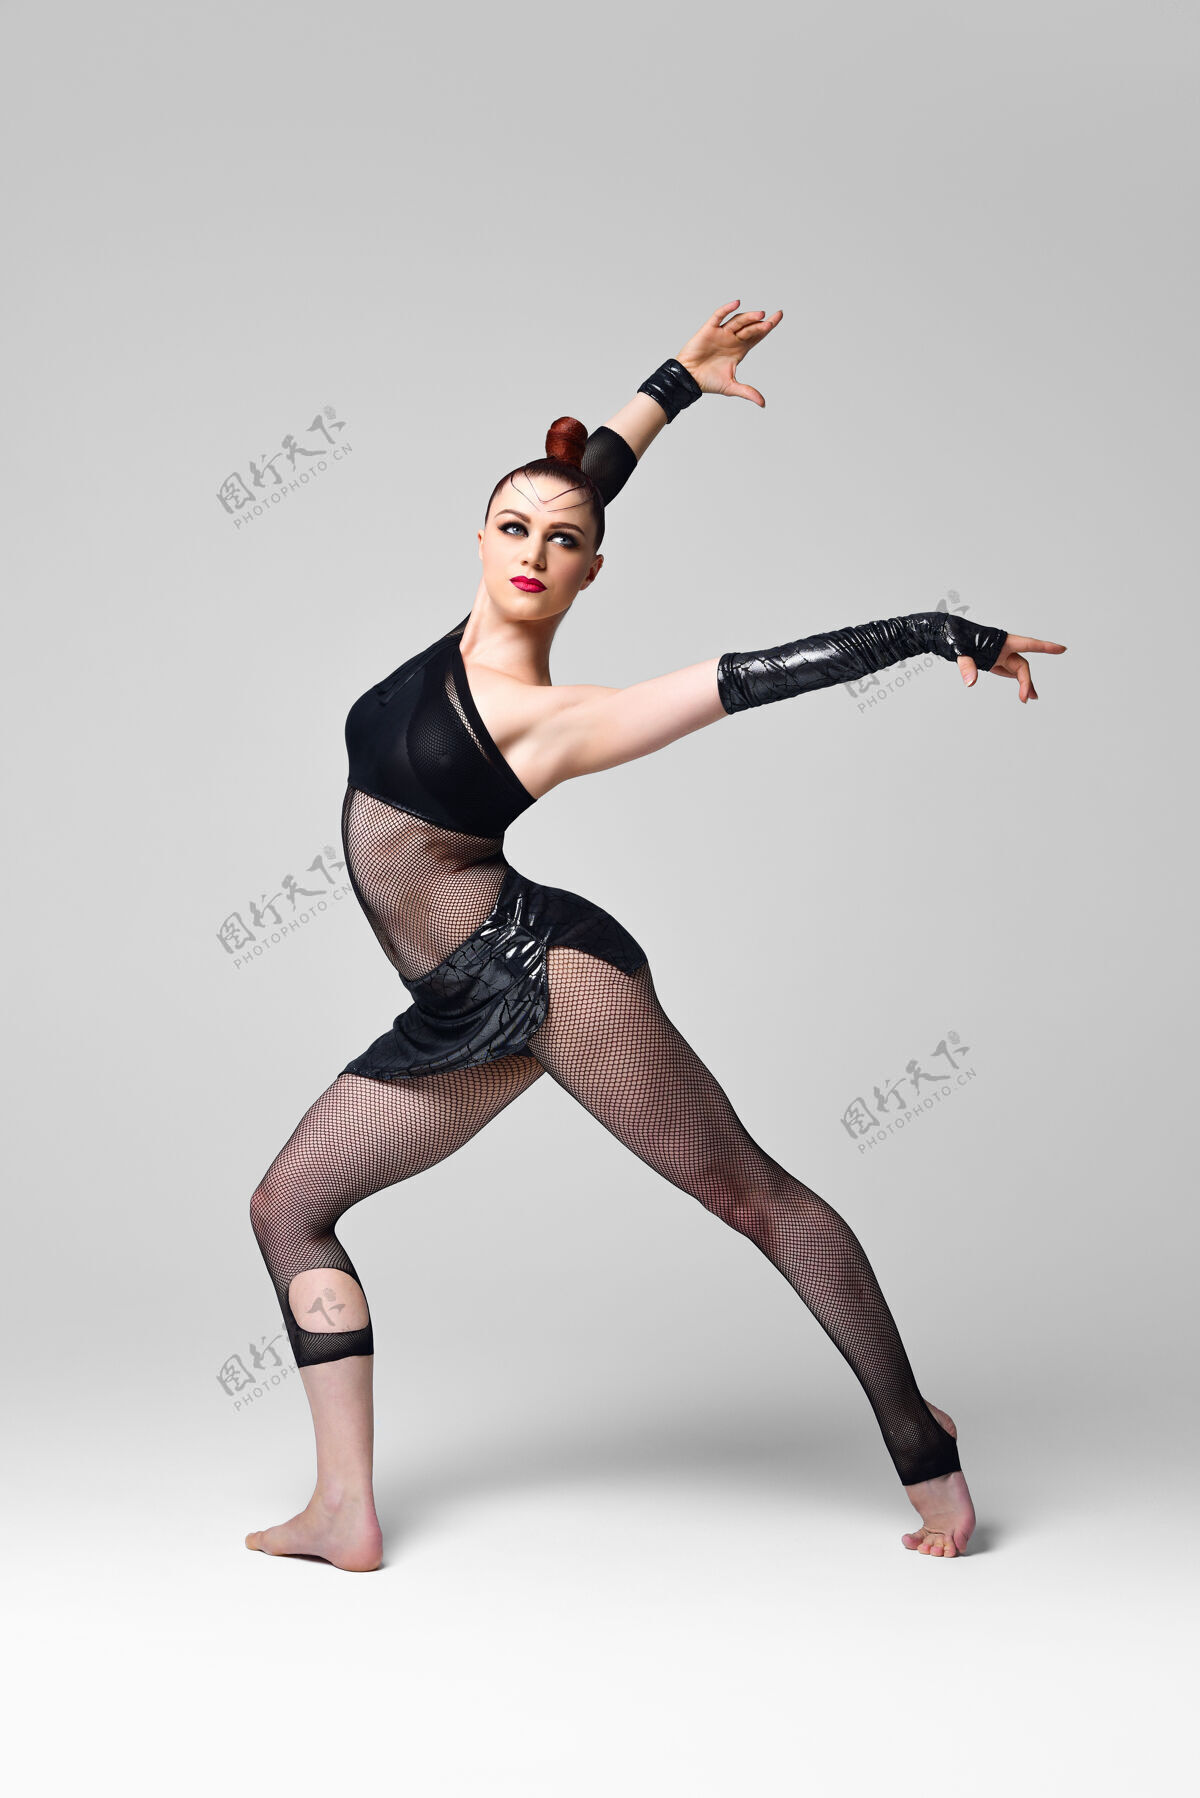 女性爵士乐现代舞者在一个富有表现力的舞蹈摆姿势女人穿着黑色表演服 妆容亮丽 发型流畅的舞者运动服装灵活